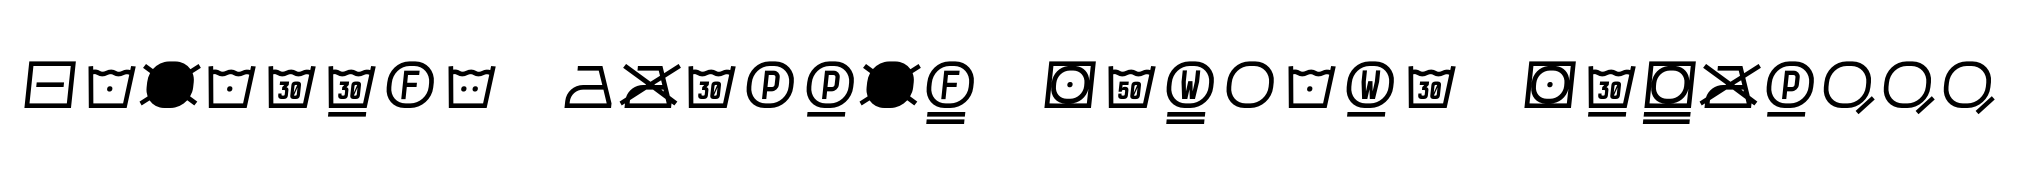 Monostep Washing Symbols Straight Light Italic image